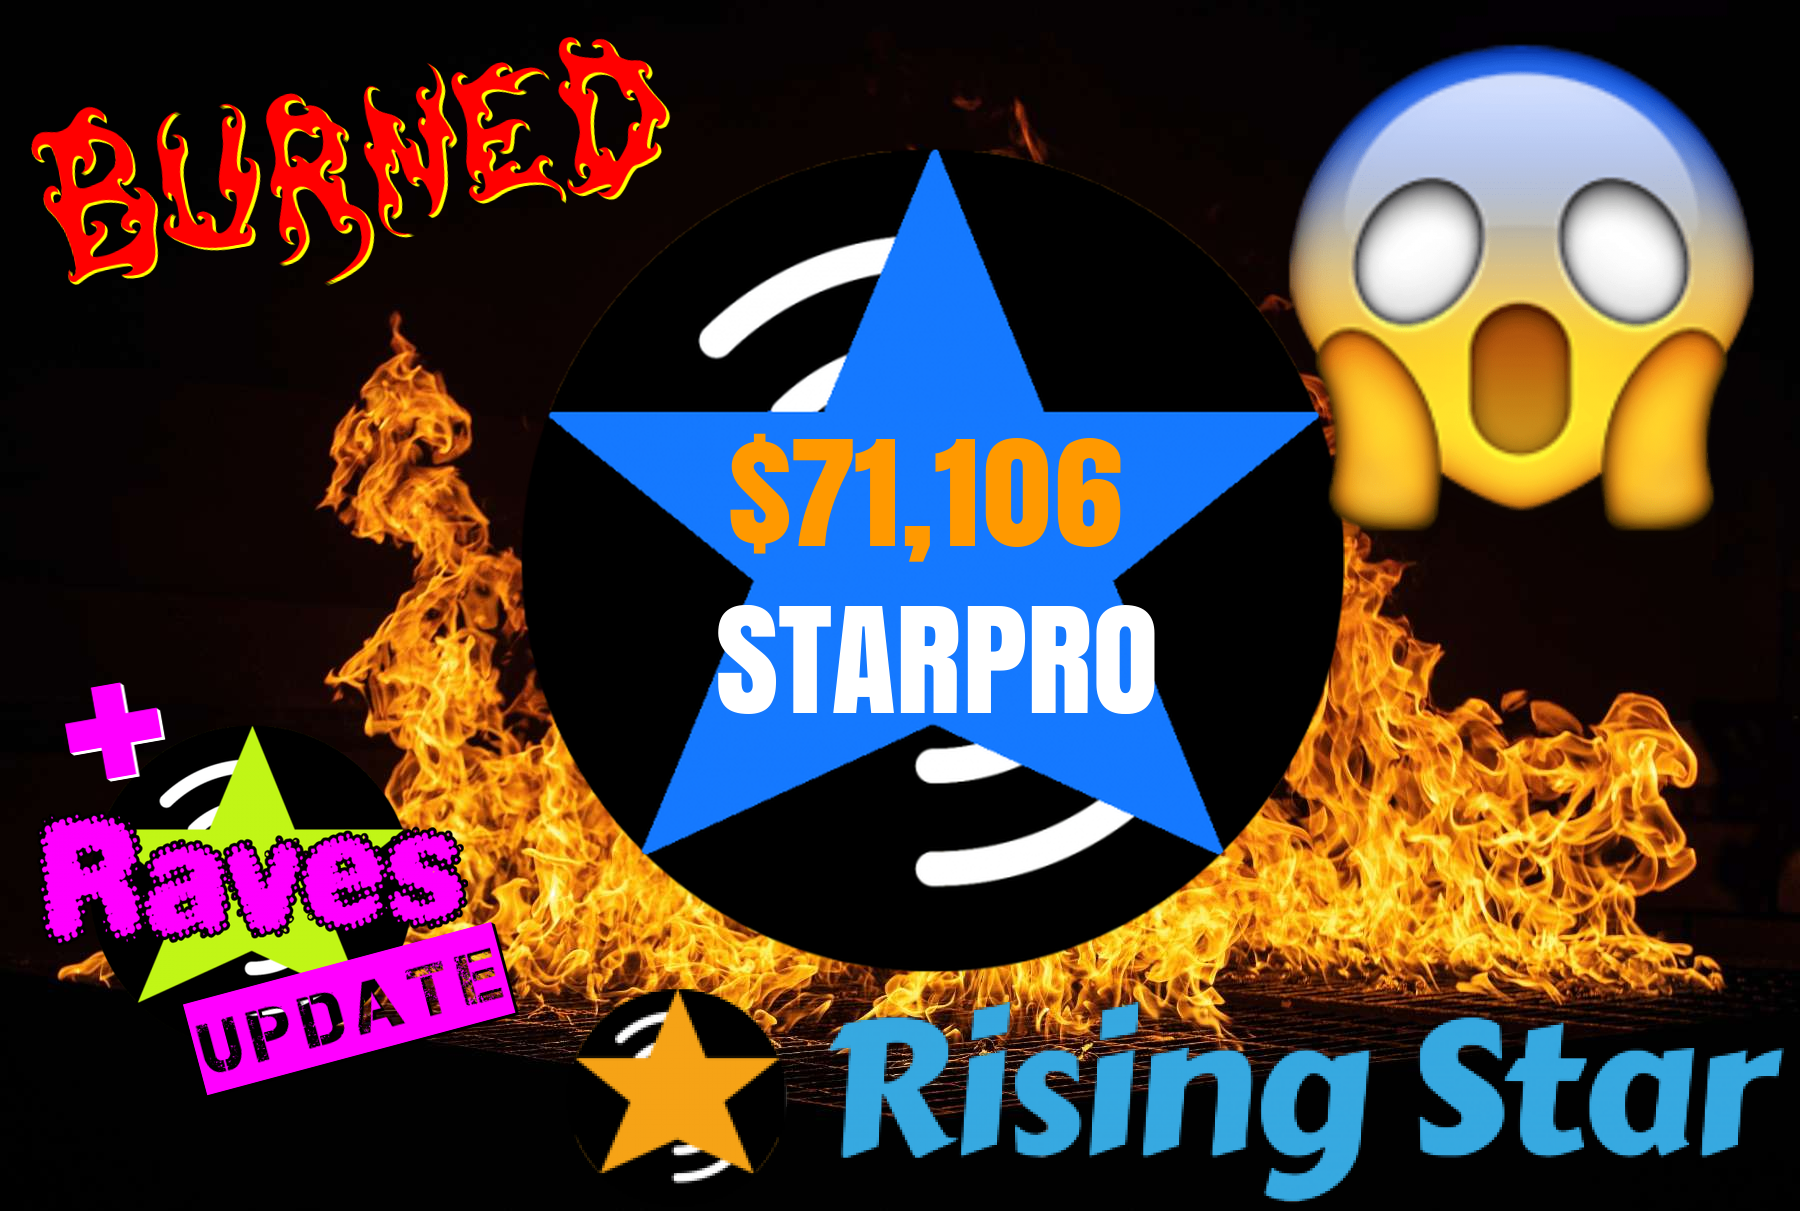 @risingstargame/dollar71106-of-starpro-burned--raves-update